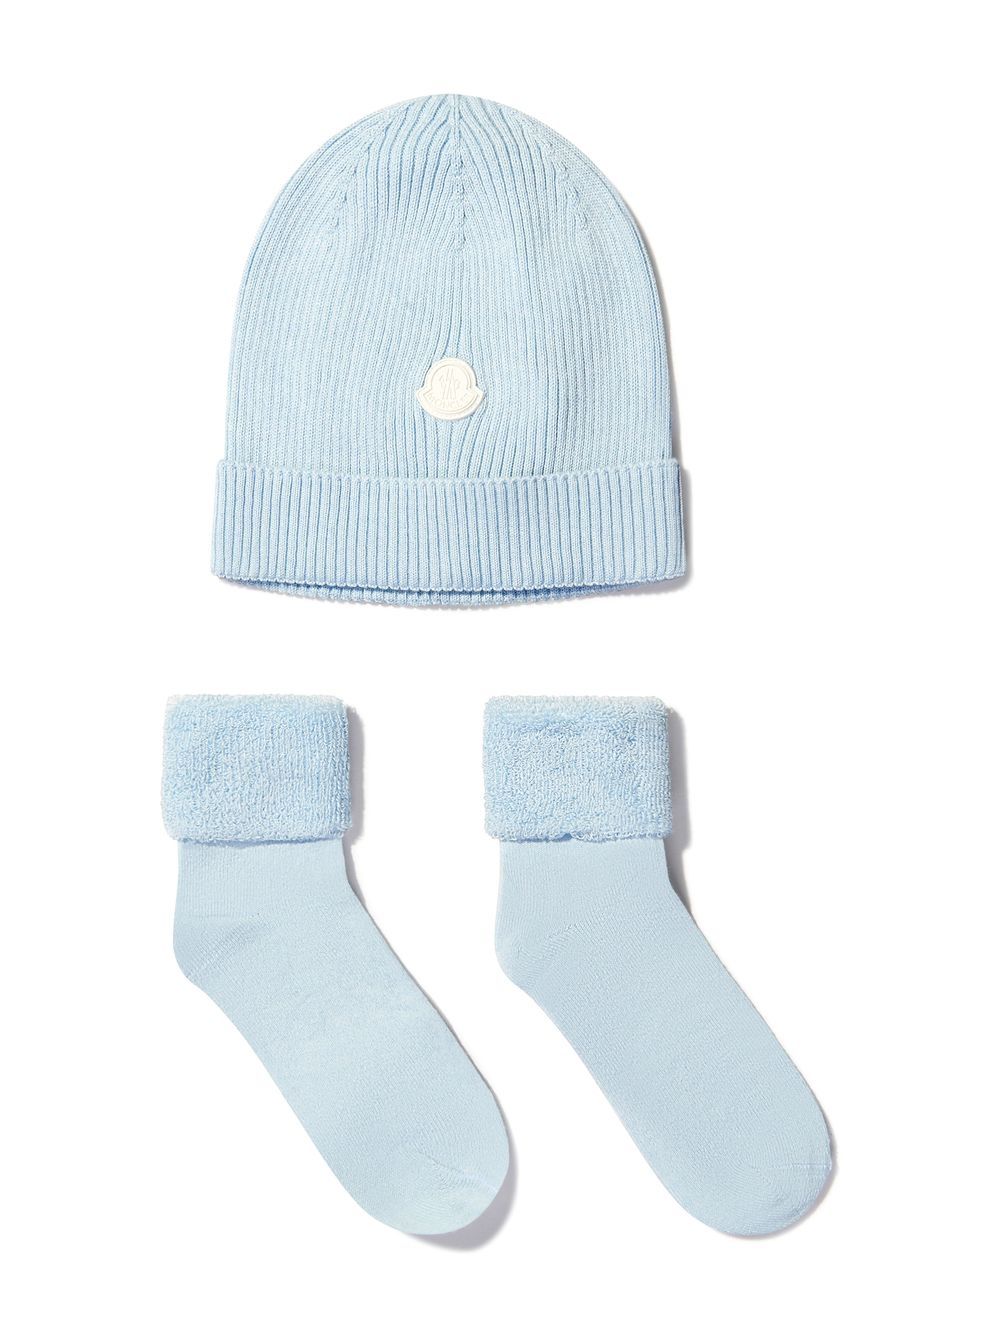 Moncler Enfant wool-cotton hat and socks set - Blue von Moncler Enfant